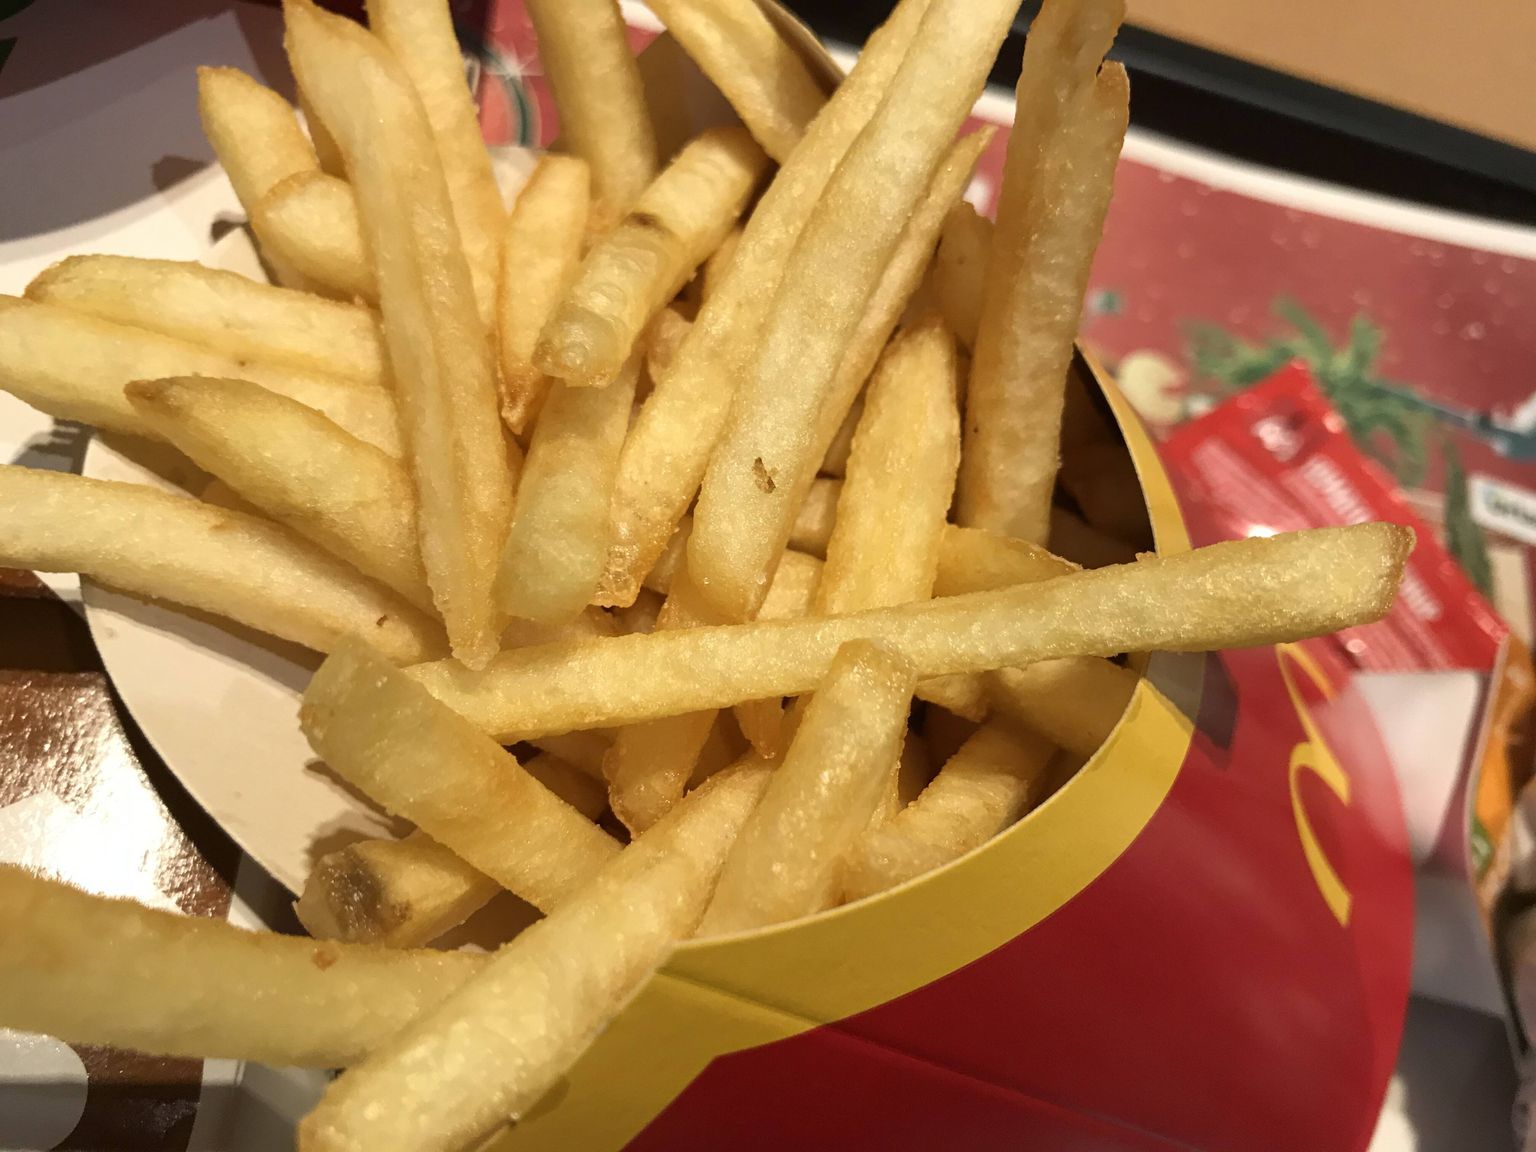 Burgerisõbrad kulutasid rohkem raha kiirtoiduketi McDonald'si söögikohtades